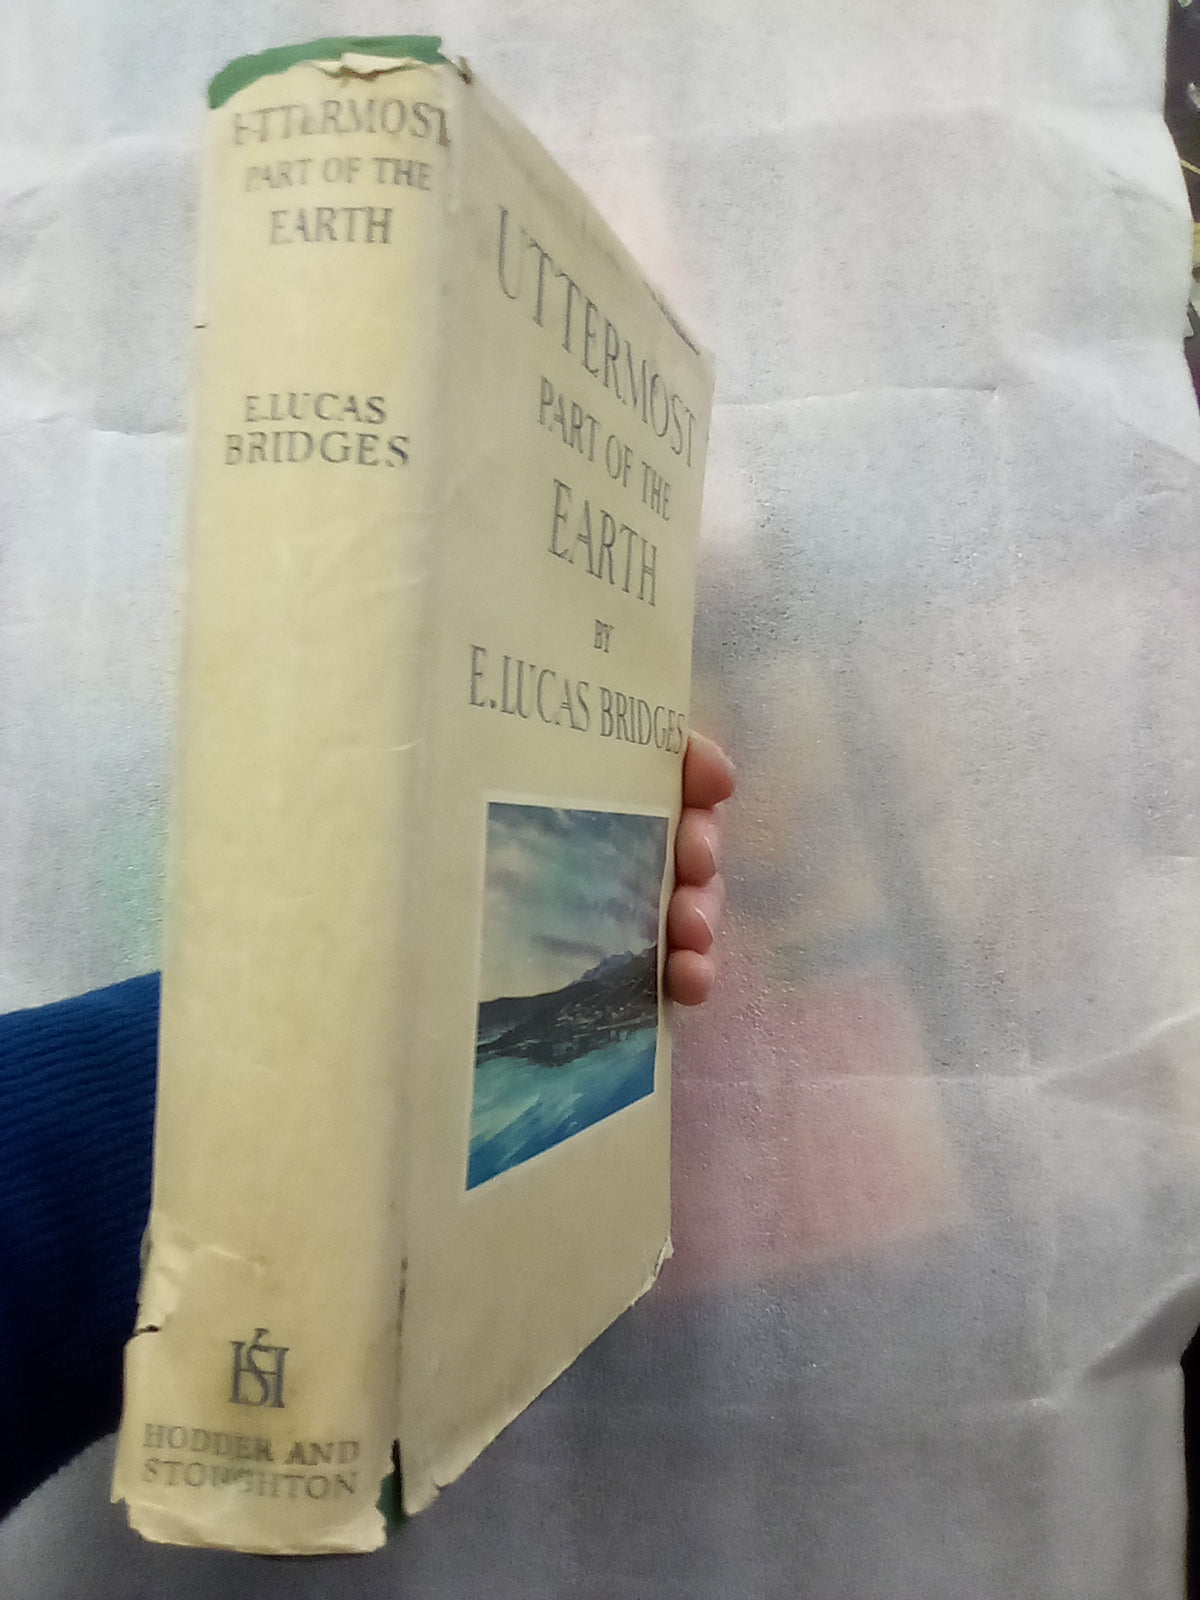 Uttermost Part of the Earth by E. Lucas Bridges